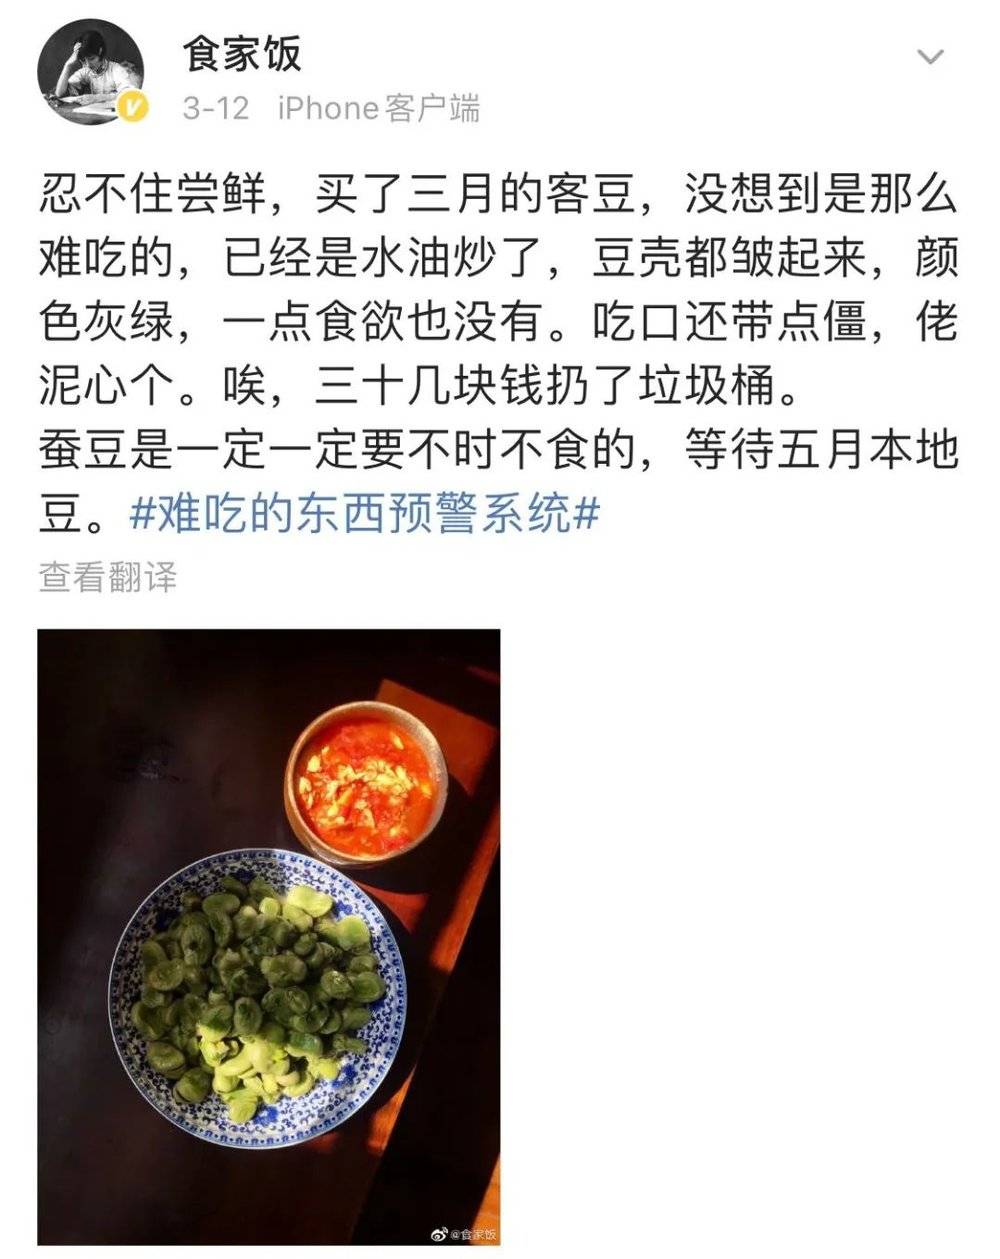 在上海人眼里客豆和本地豆的地位天差地别